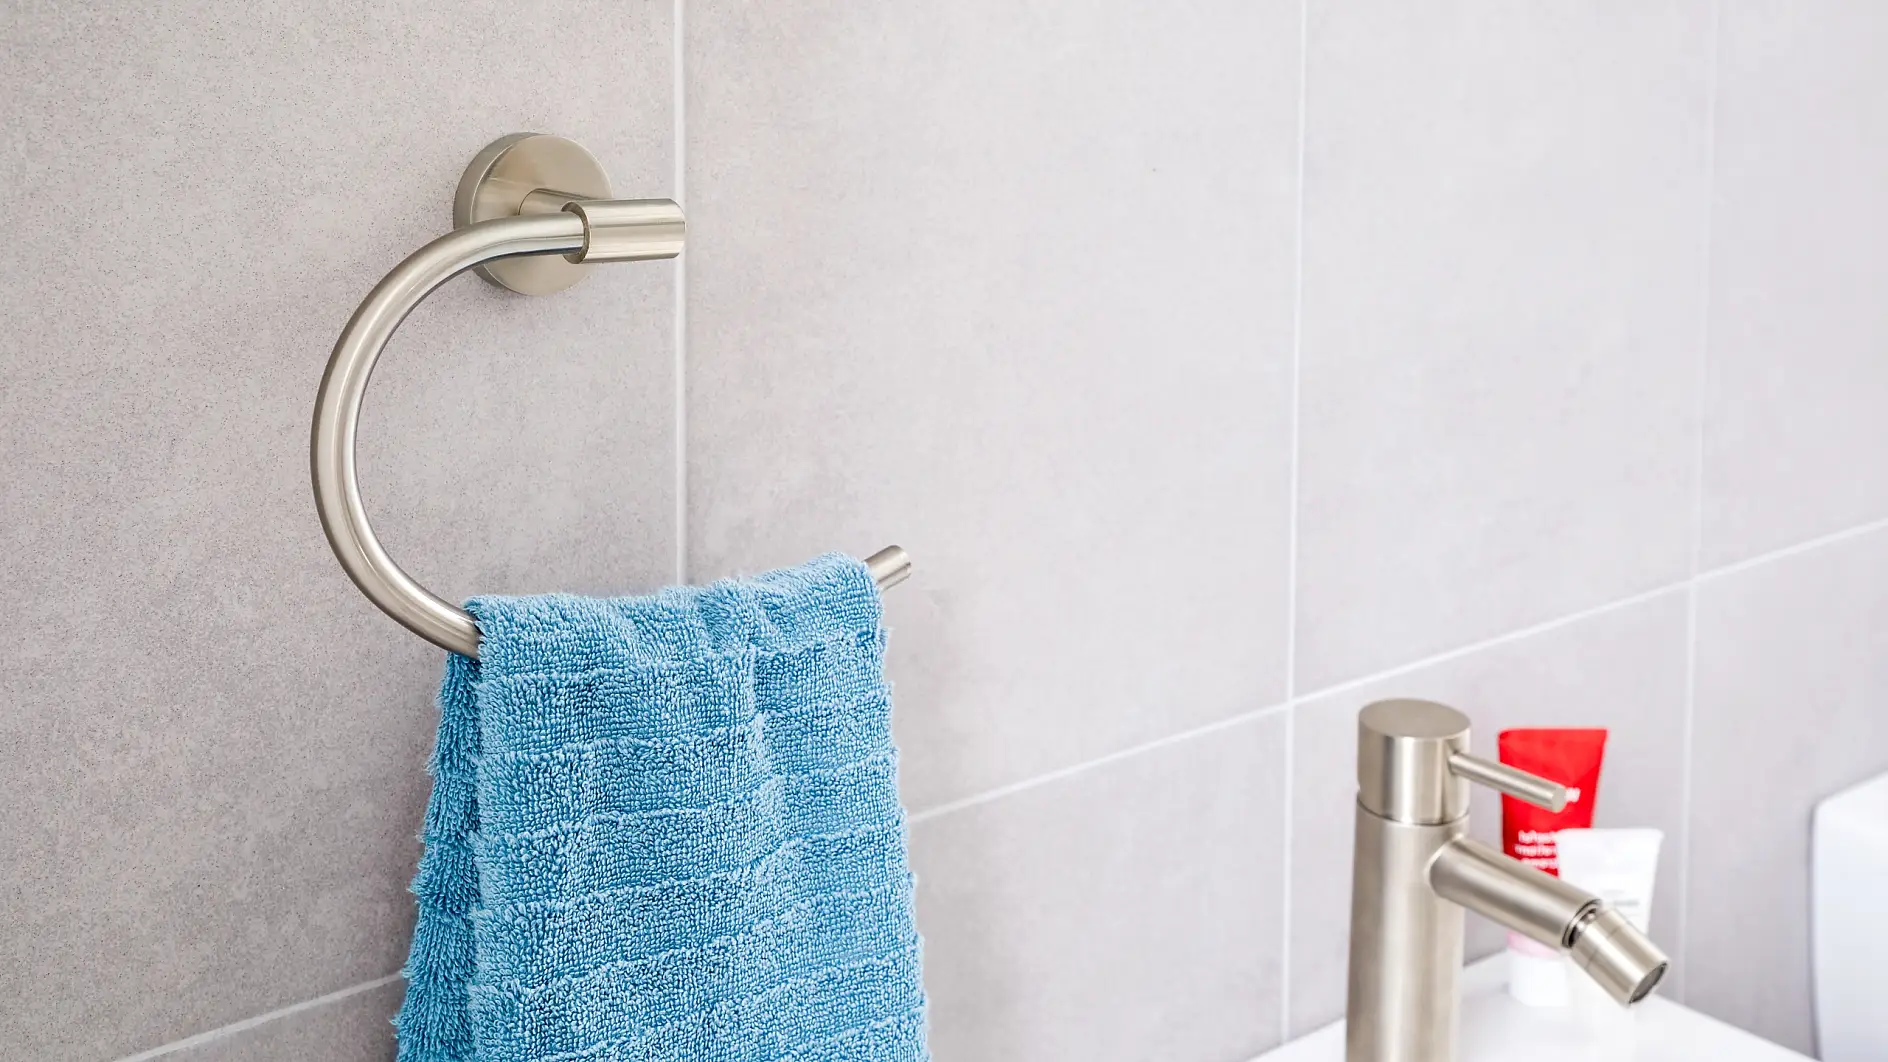 Vznešený design a efektivní využití k ukládání ručníků poblíž umyvadla.